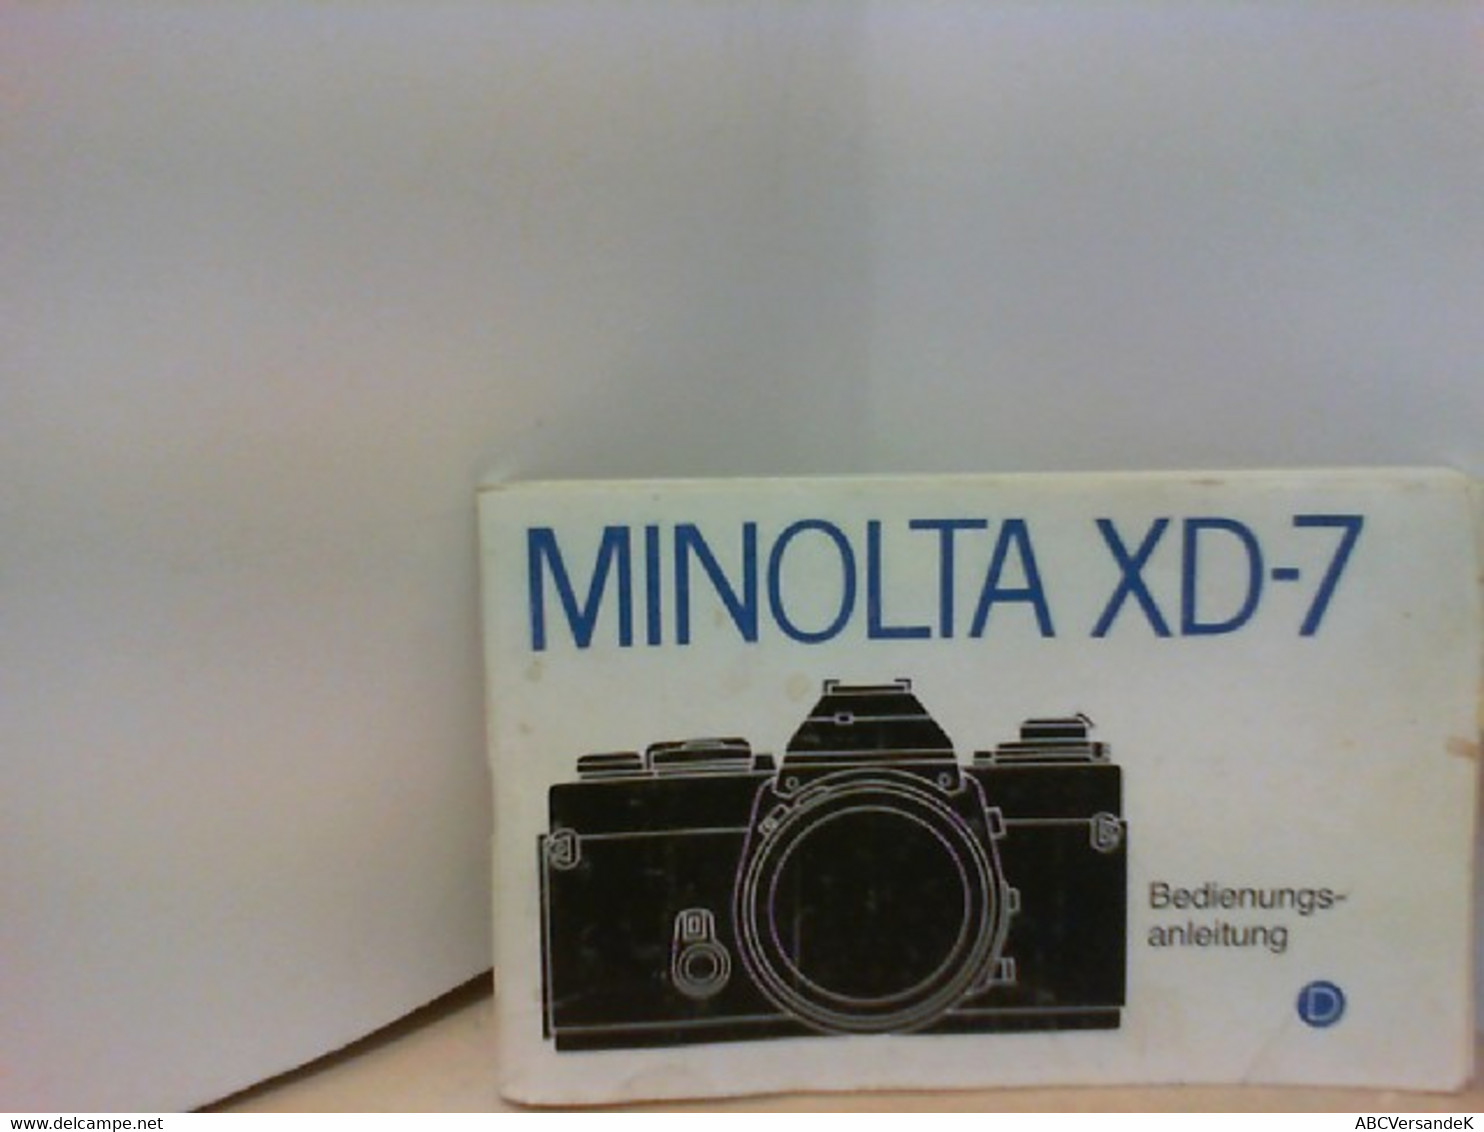 MINOLTA XD - 7 Bedienungsanleitung - Photography